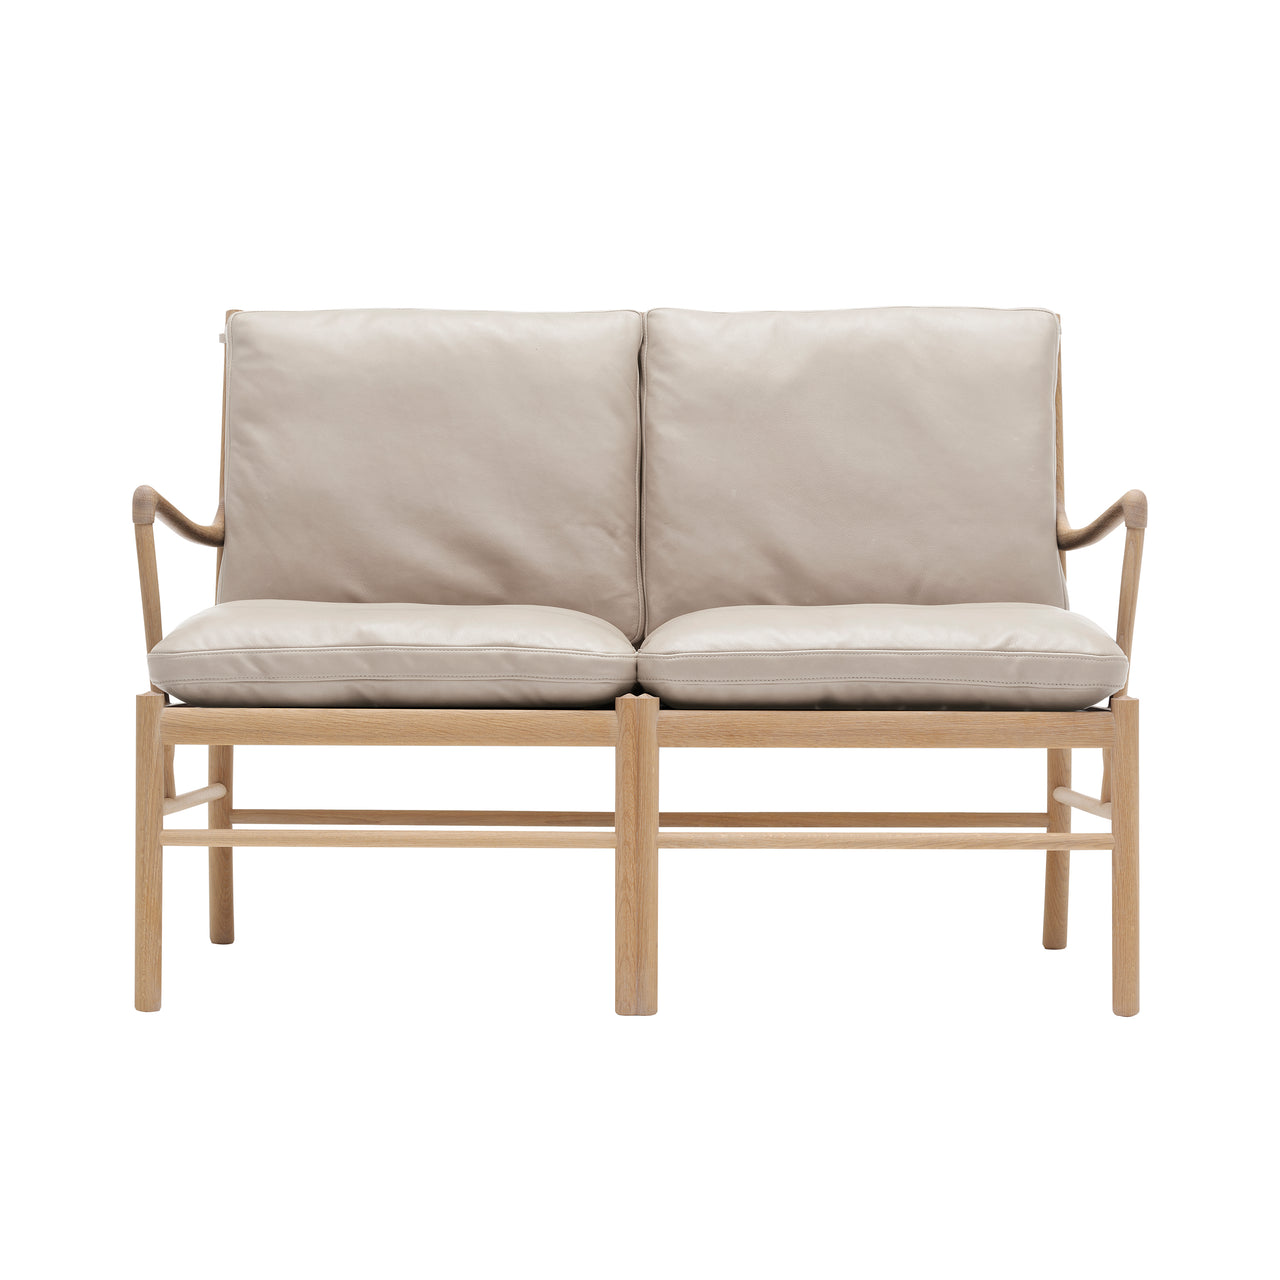 OW149-2 Colonial Sofa: White Oiled Oak